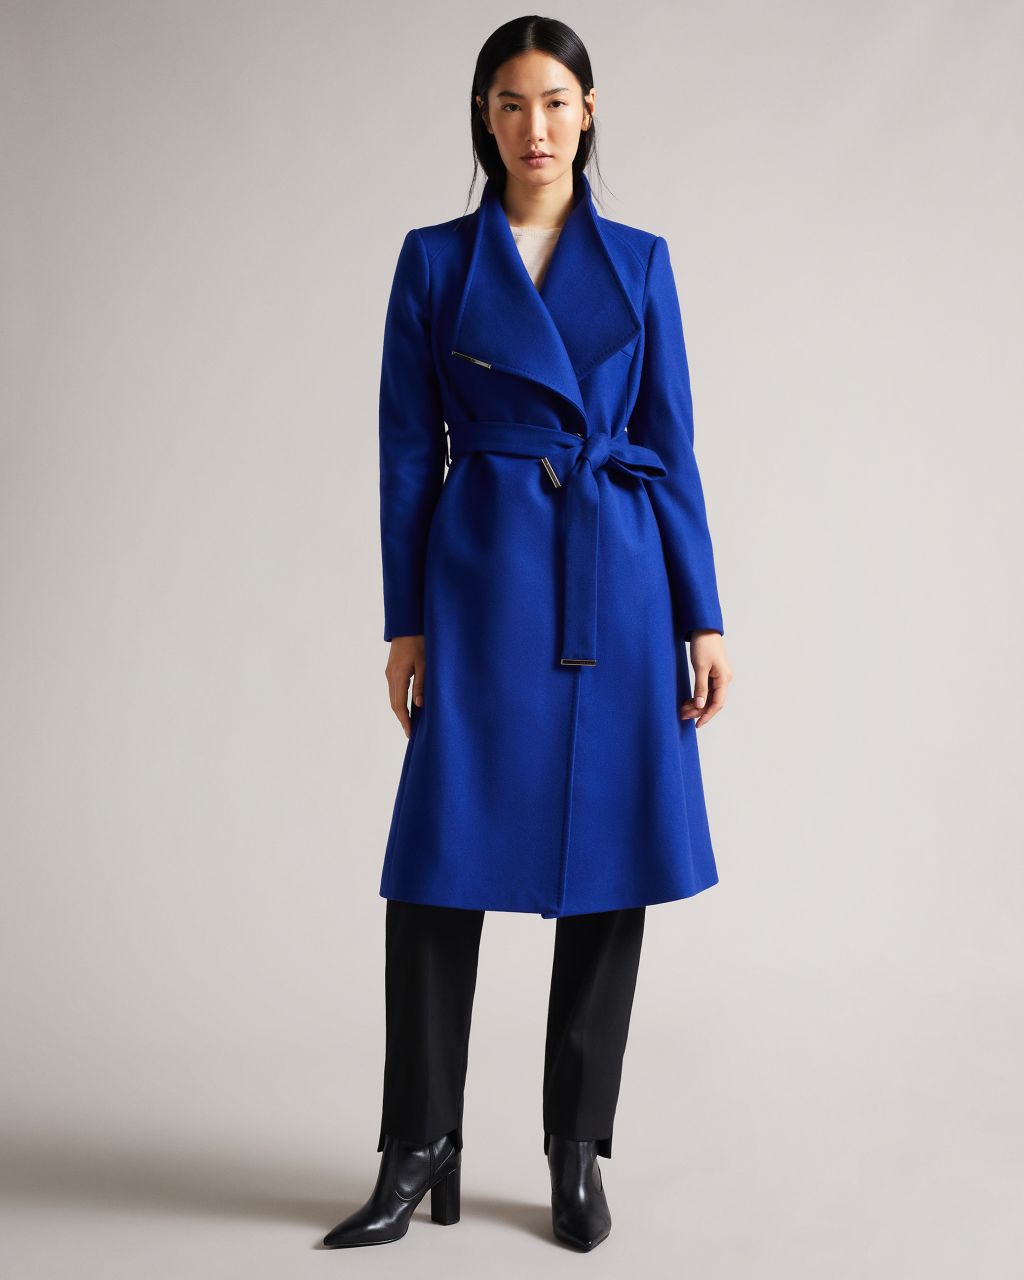 Women's Wool Wrap Coat in Bright Blue, Rose